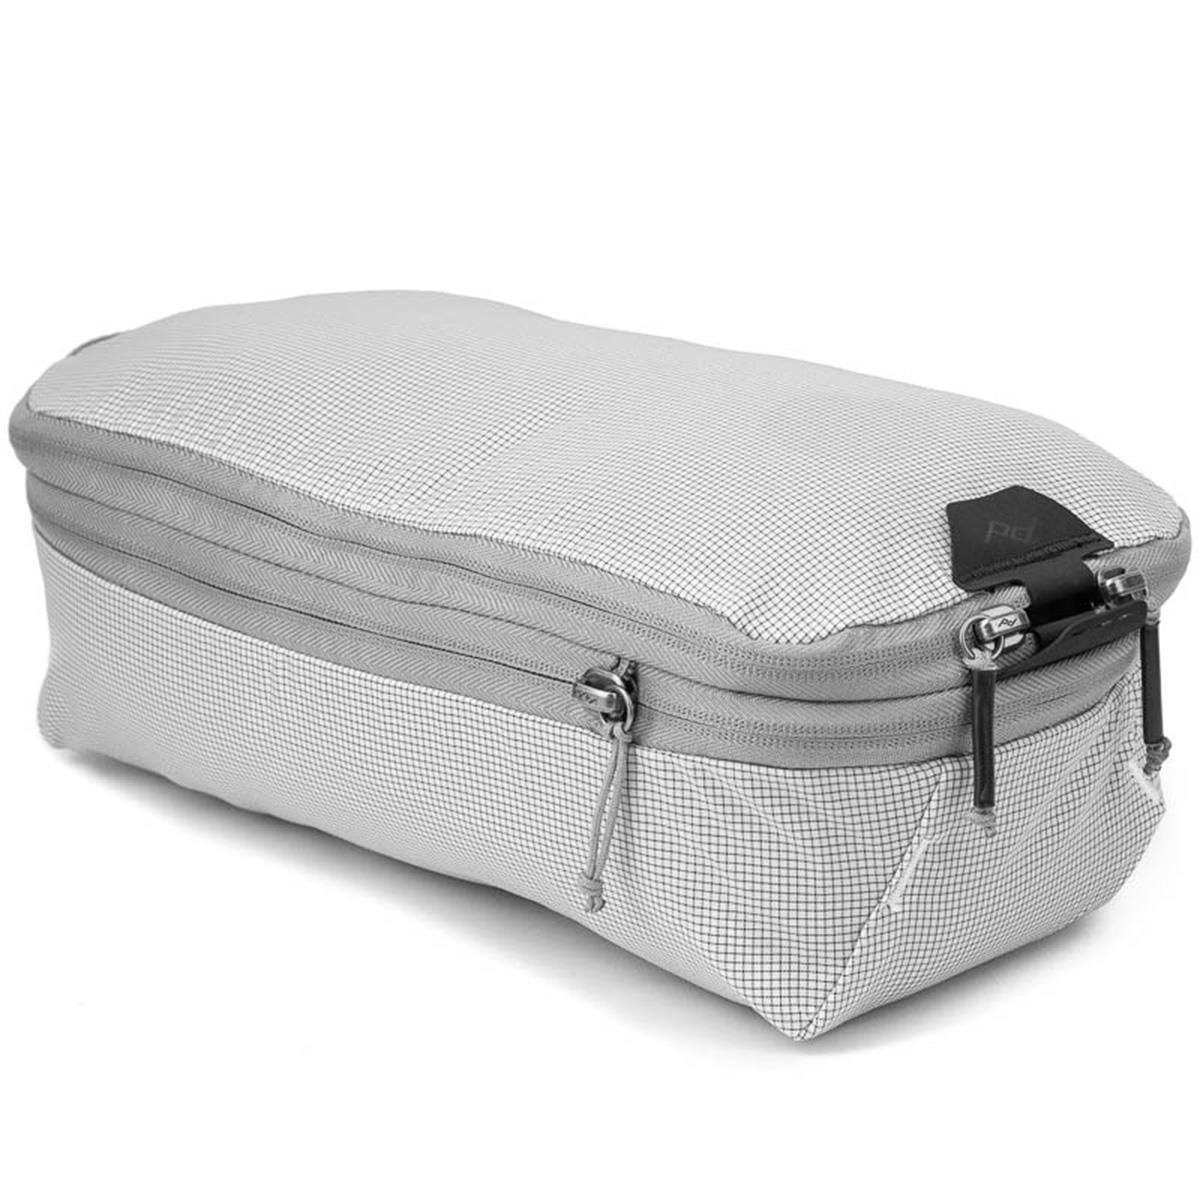 günstigen Preisen erhältlich. Peak Design Rucksack Packing Cube Travel für (natur) Raw Small Backpack 9L